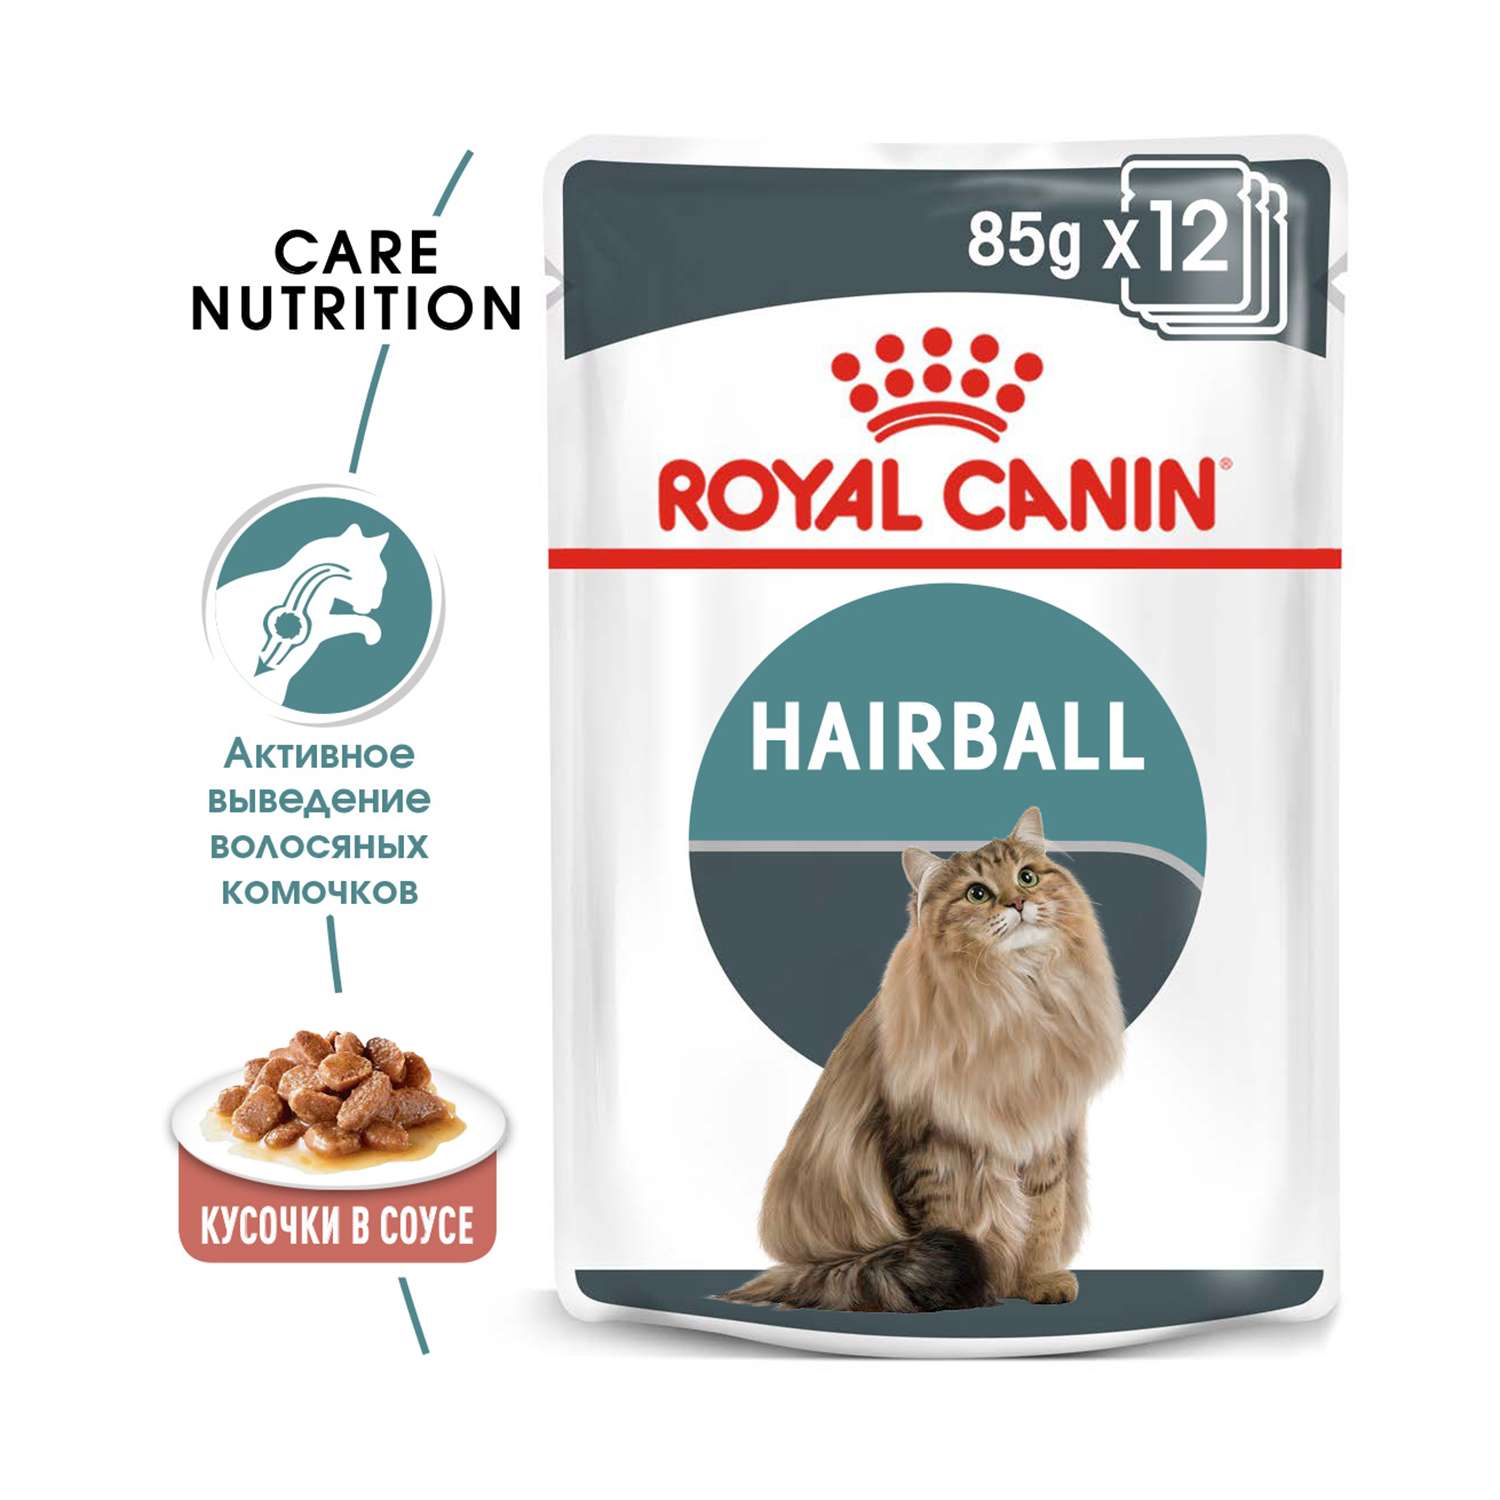 Корм влажный для кошек ROYAL CANIN Hairball Care 85г соус в целях профилактики образования волосяных комочков в желудочно-кишечном тракте пауч - фото 1